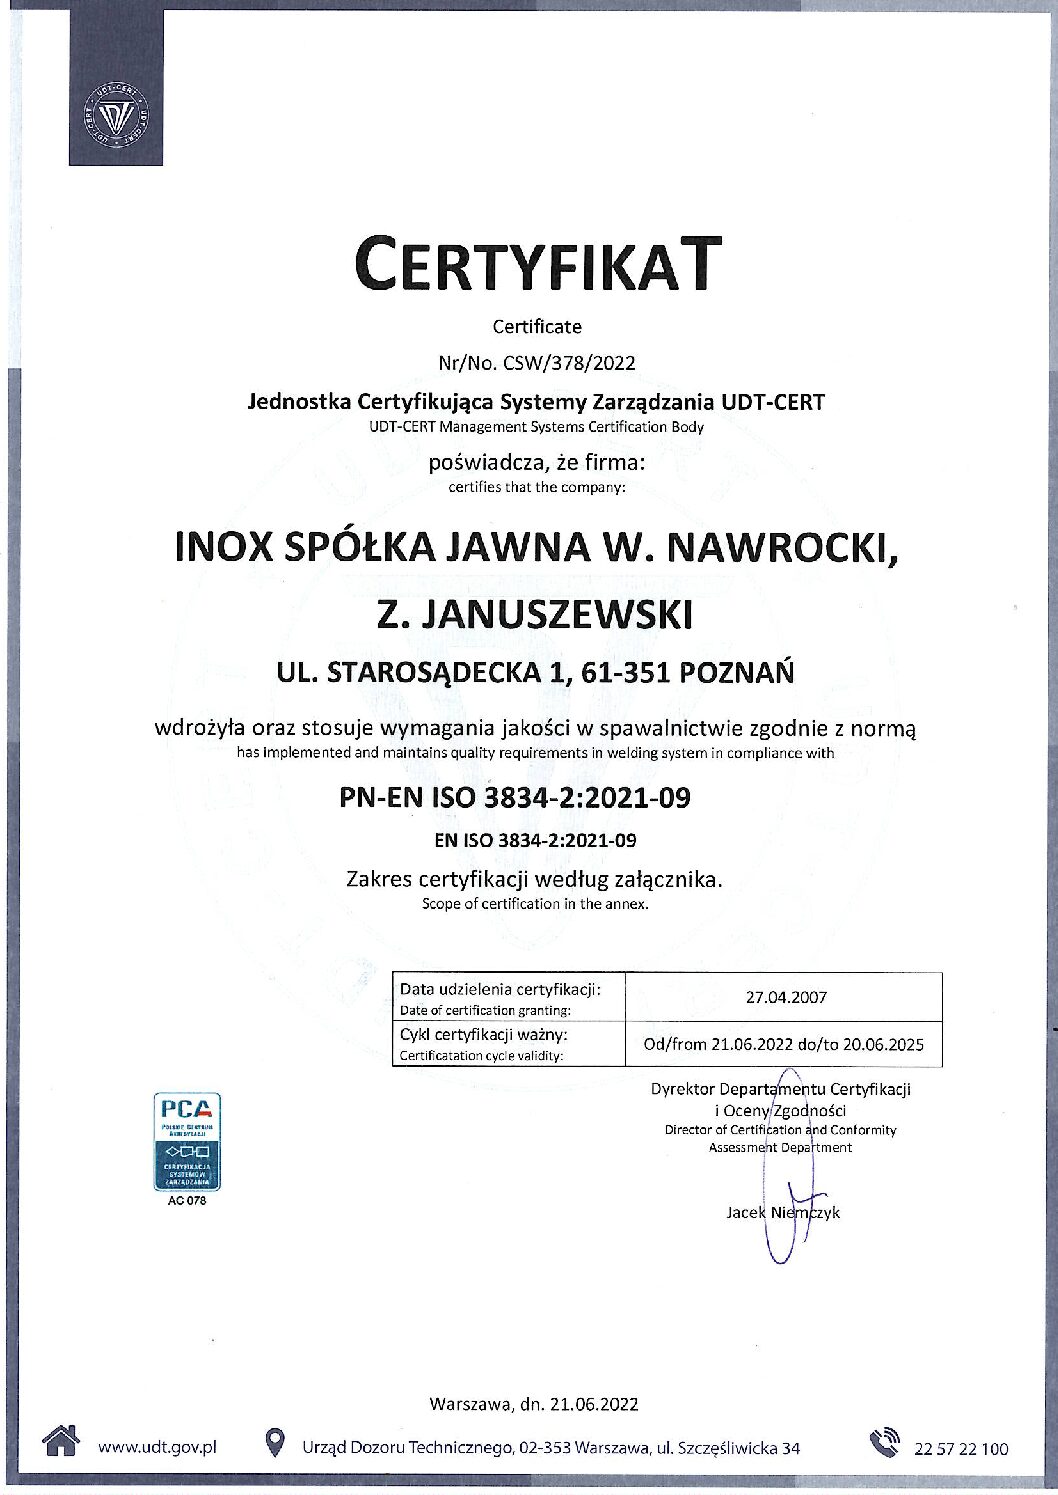 certyfikat jakości w spawalnictwie 3834-2:2007